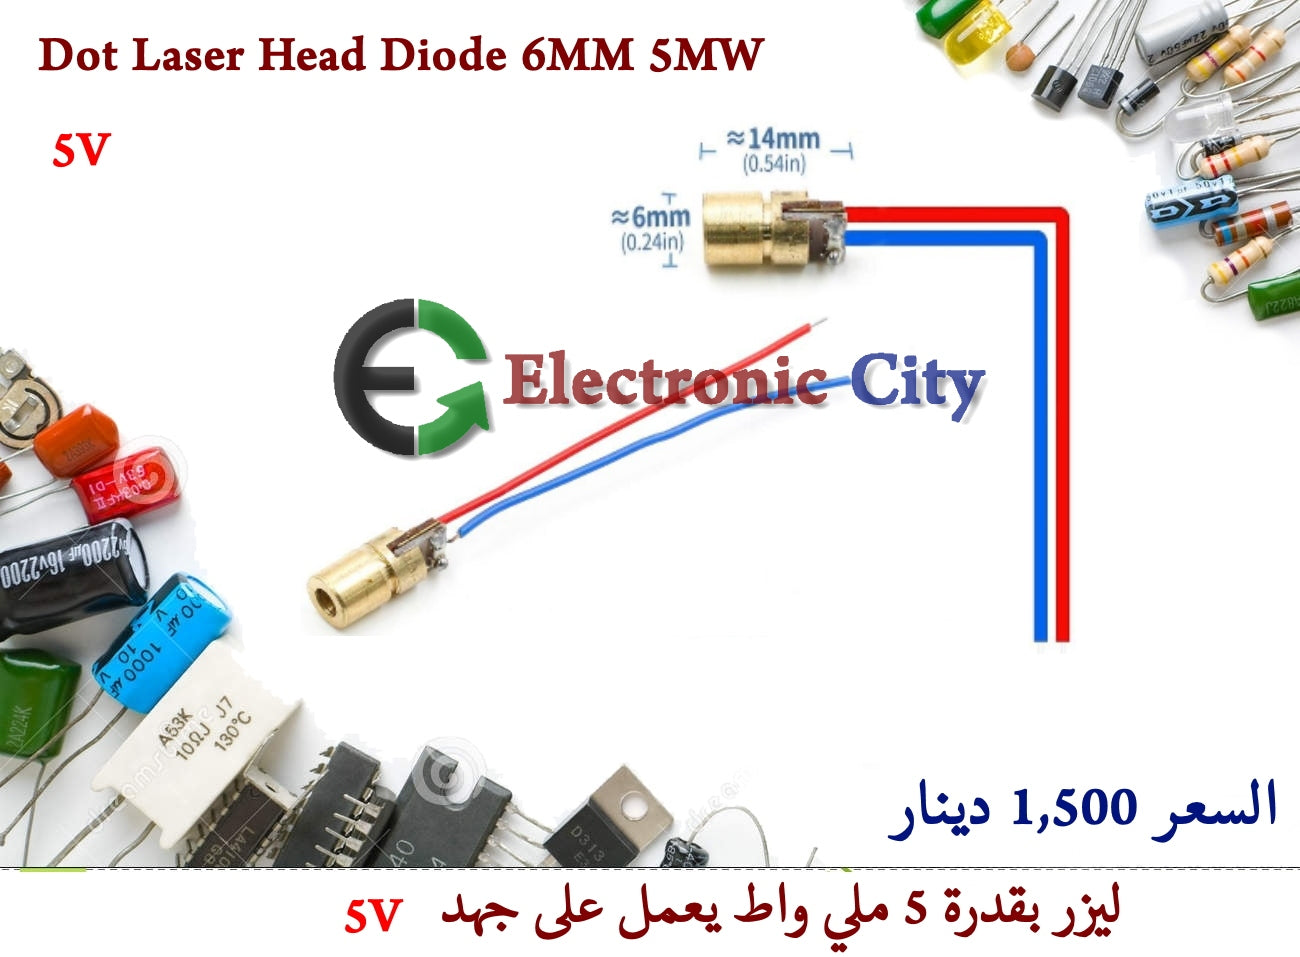 Dot Laser Head Diode 6MM 5MW 5V